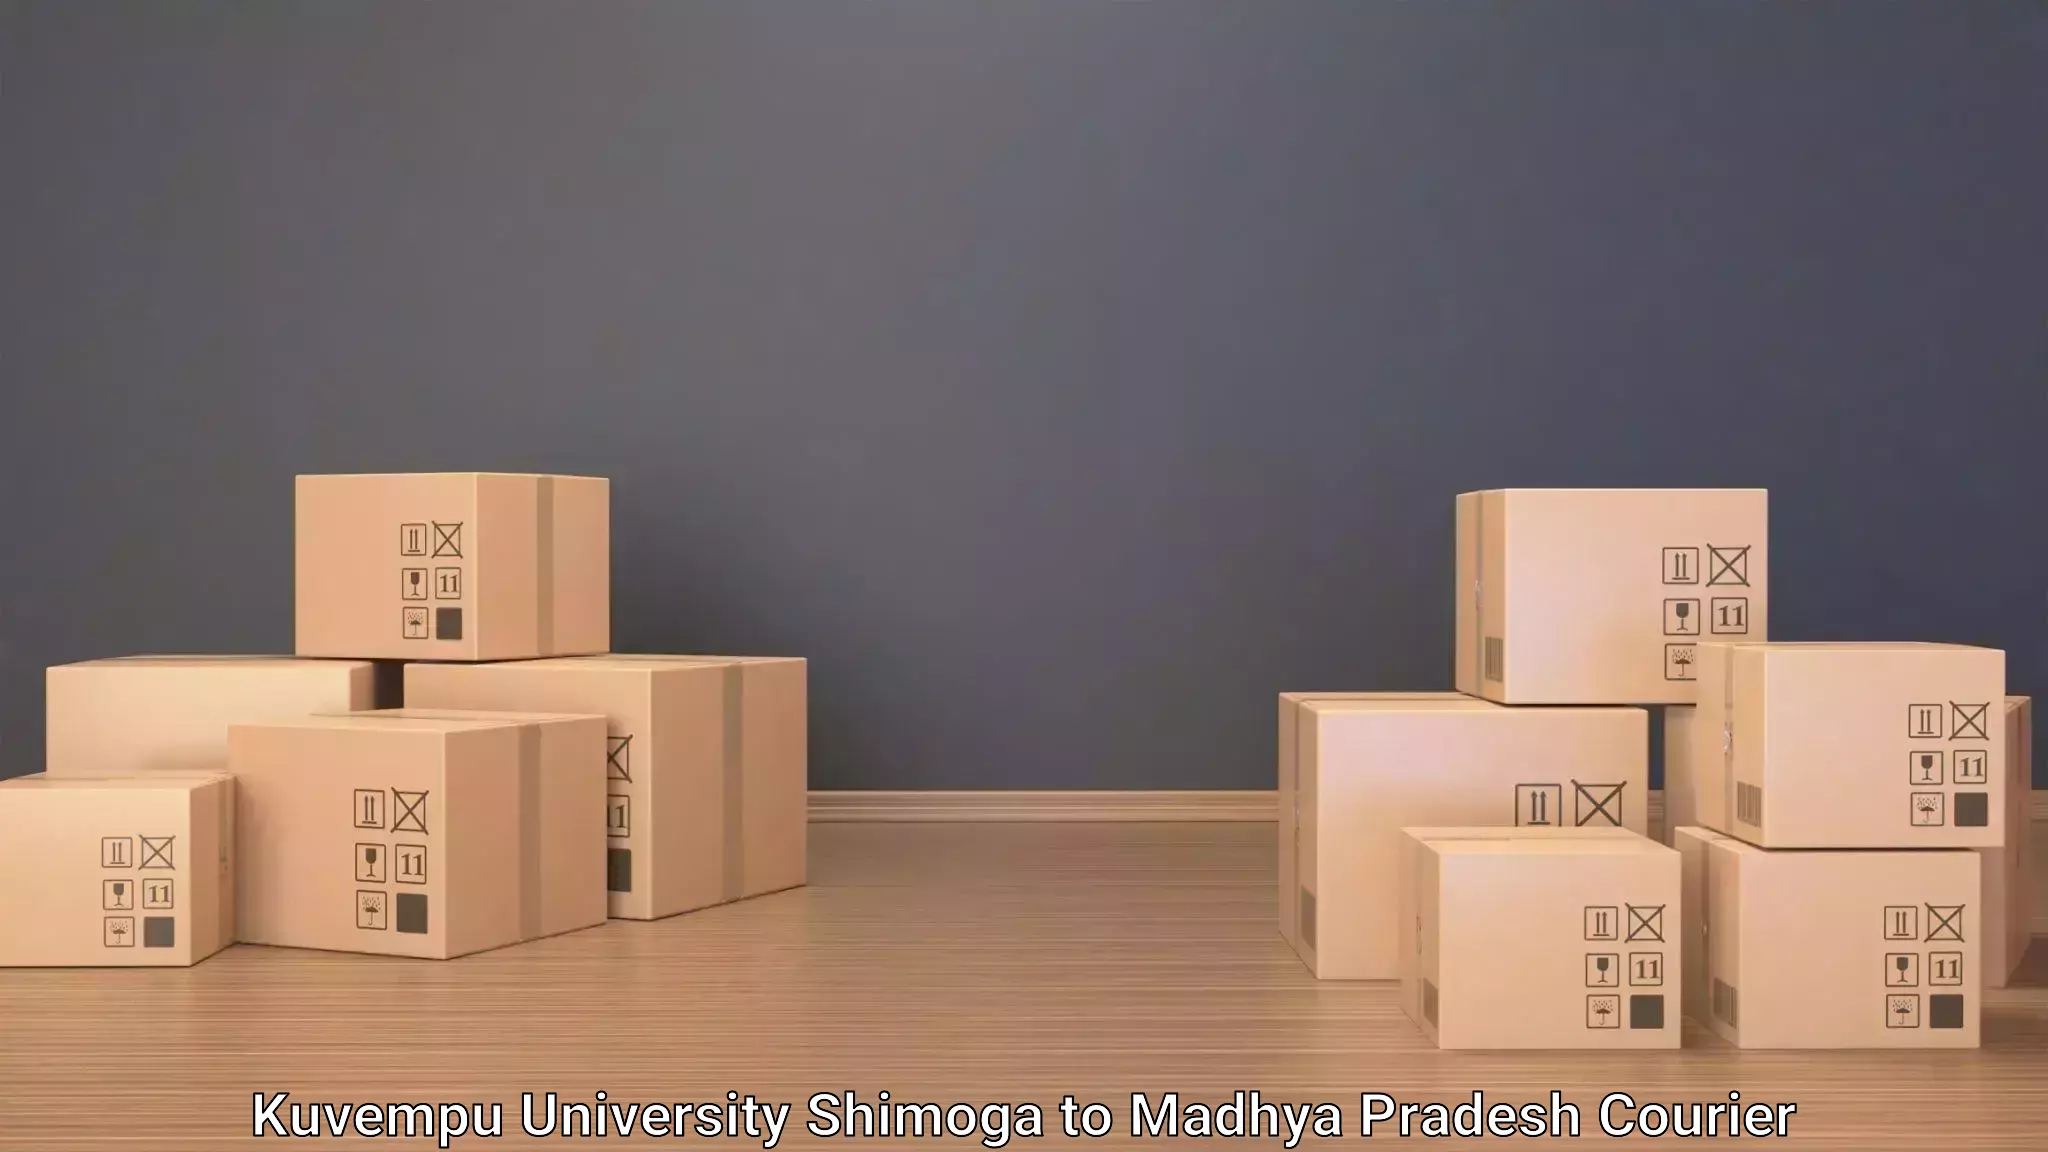 Luggage transport service Kuvempu University Shimoga to IIT Indore